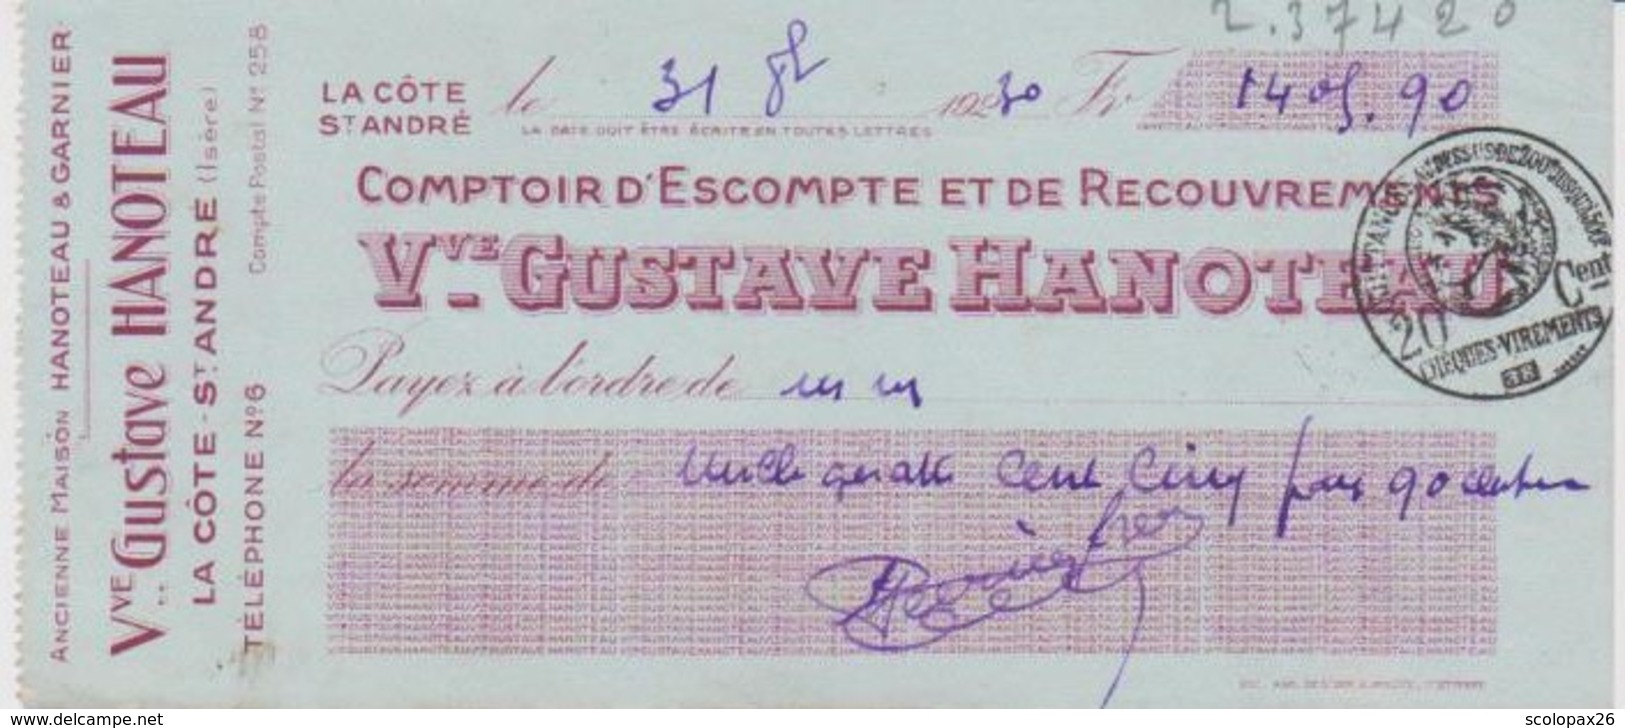 Chèque Banque Gustave Hanoteau La Côte Saint André (Isère) De 1930 Cachet Quittance 20 Cts - Chèques & Chèques De Voyage